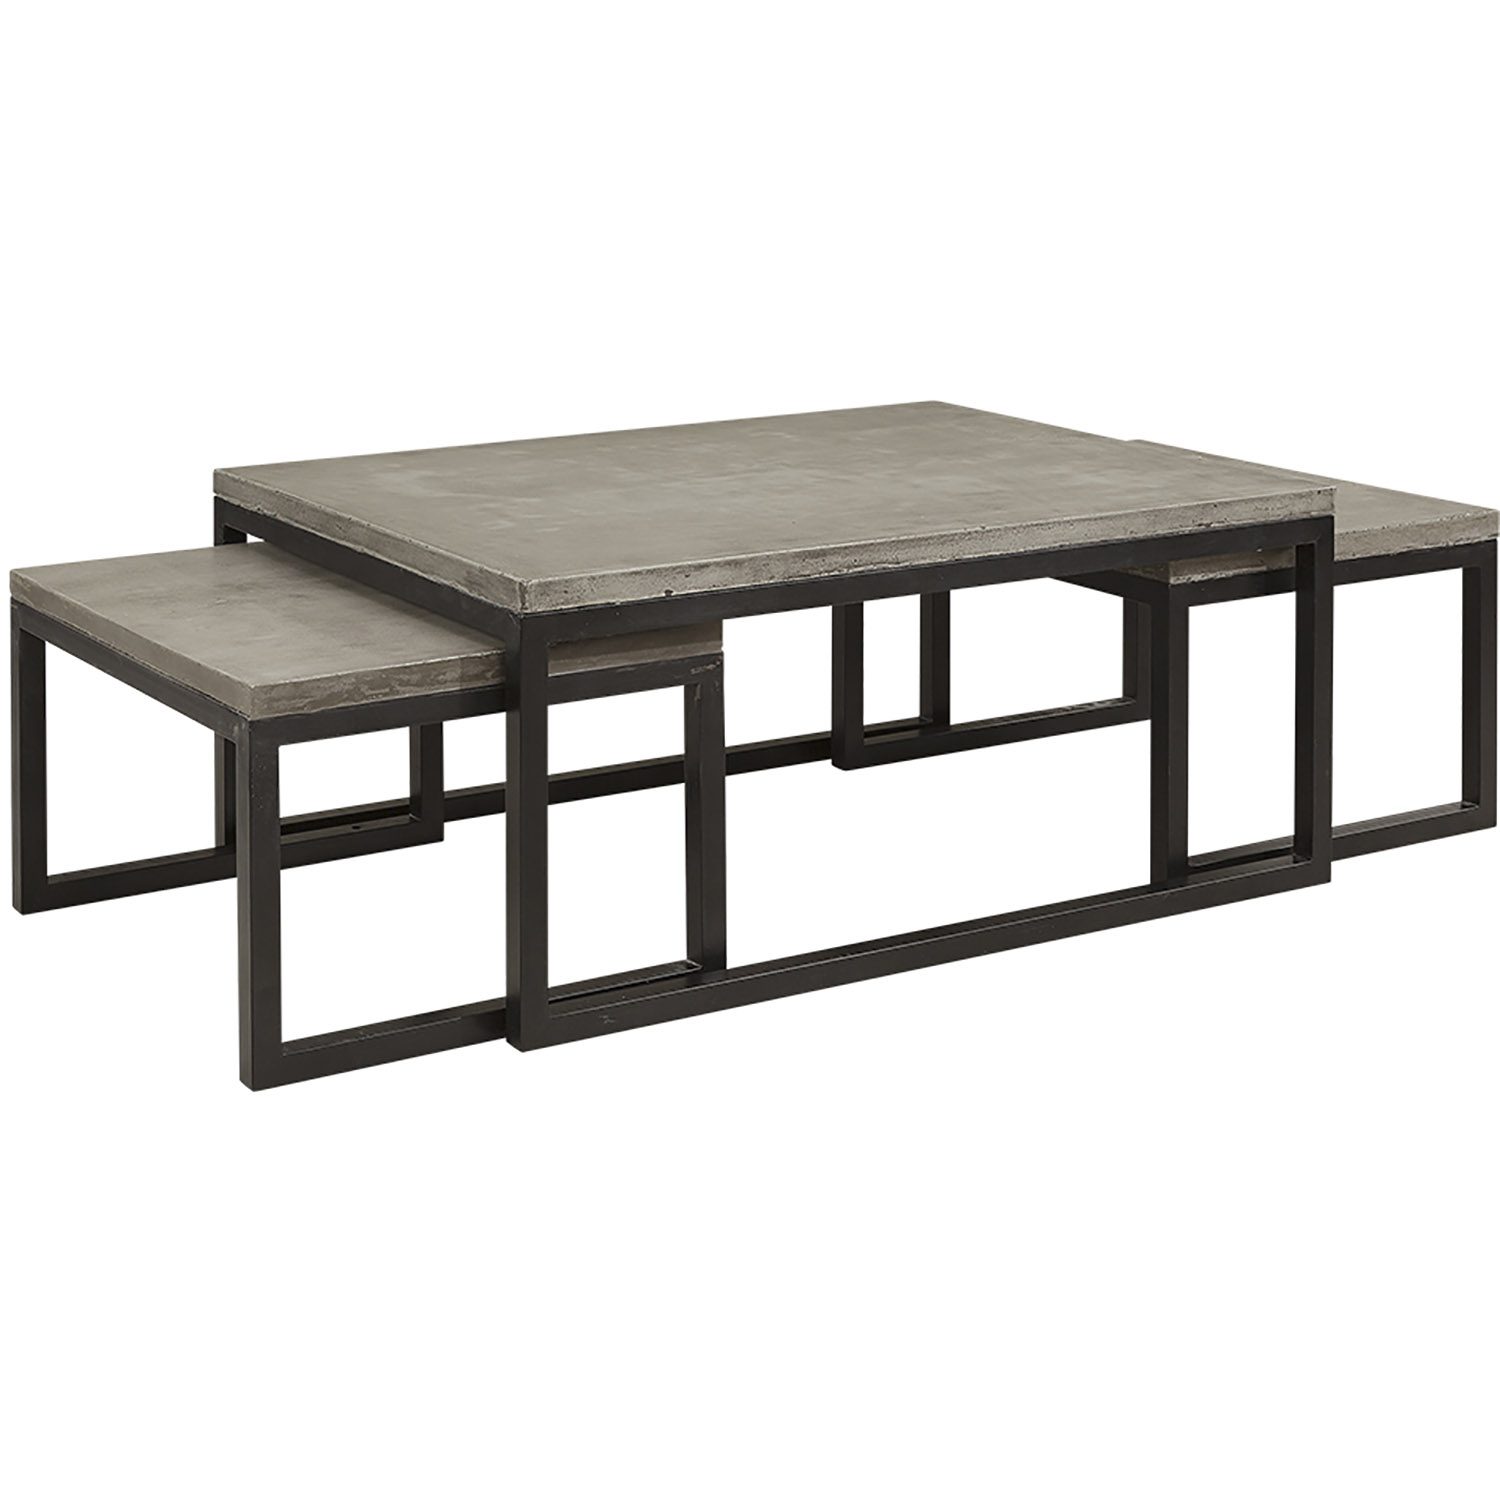 Toshu soffbord i lättbetong och stål i tre delar från Artwood.